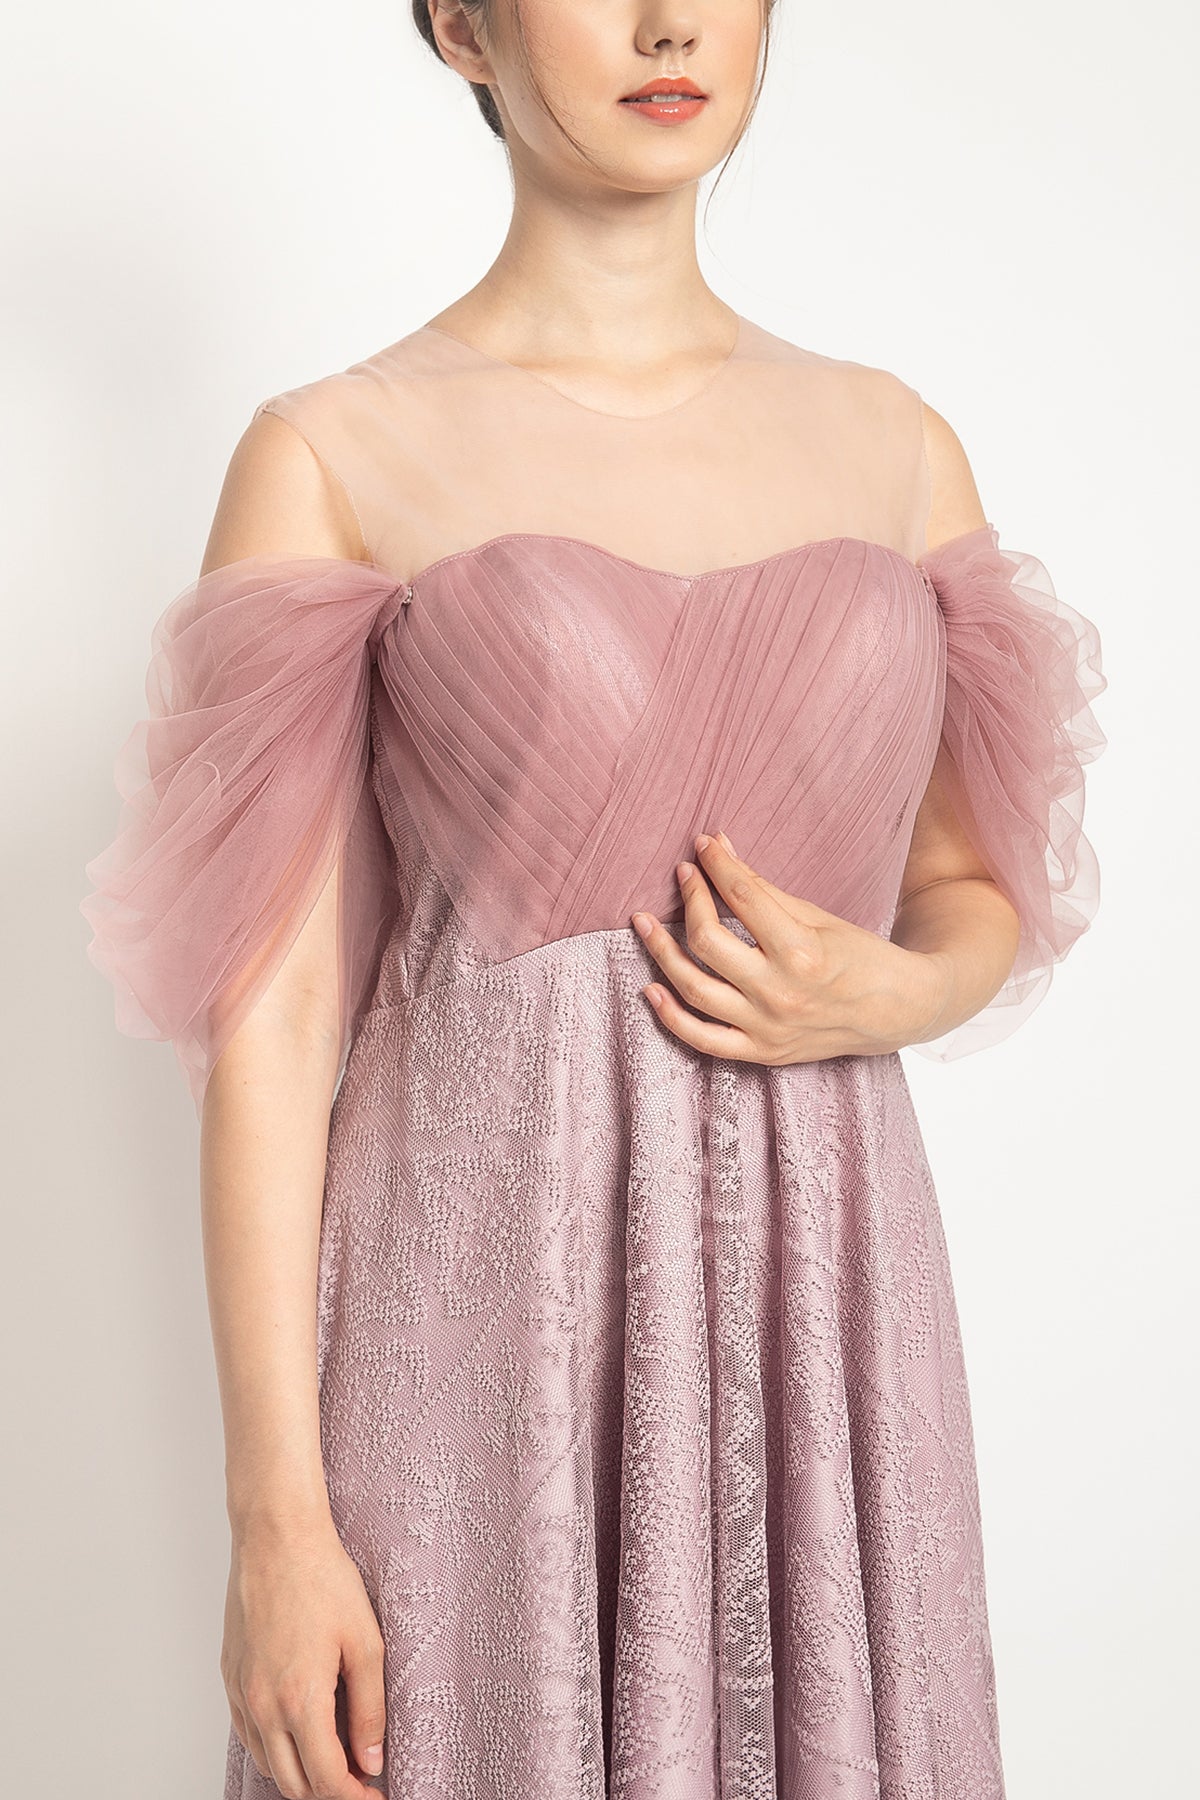 Naiya Dress in Lilac